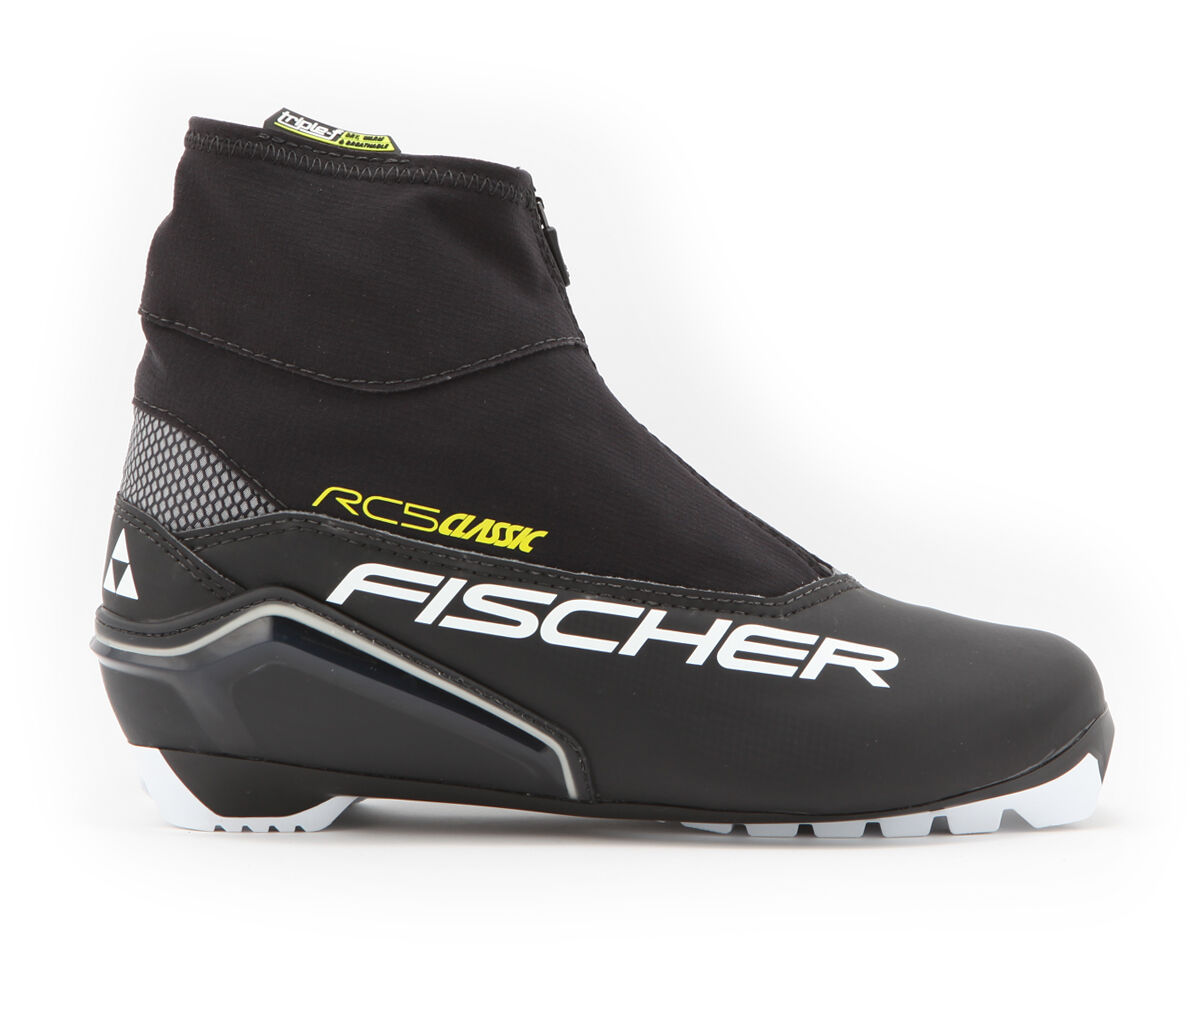 Fischer RC5 Classic skisko Svart S17017 48 2018